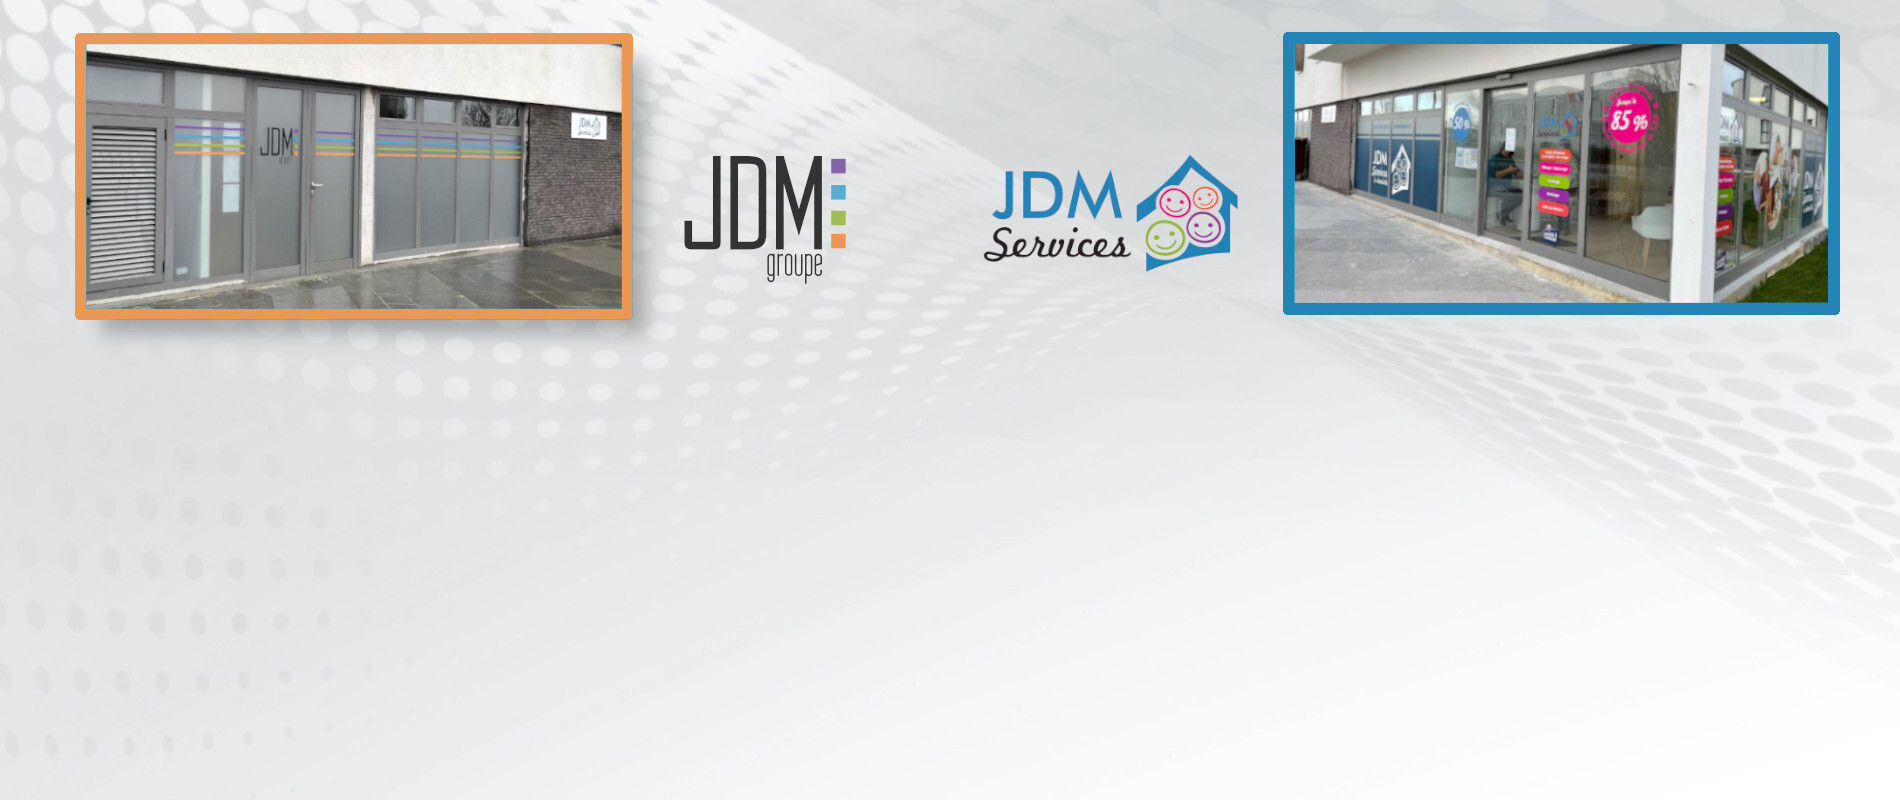 <p style="margin-top: 40px;">Nouveau siège et nouvelle agence JDM Services<br>
												Au 13-15 Boulevard de la Plaine à Chanteloup-en-Brie !<p>